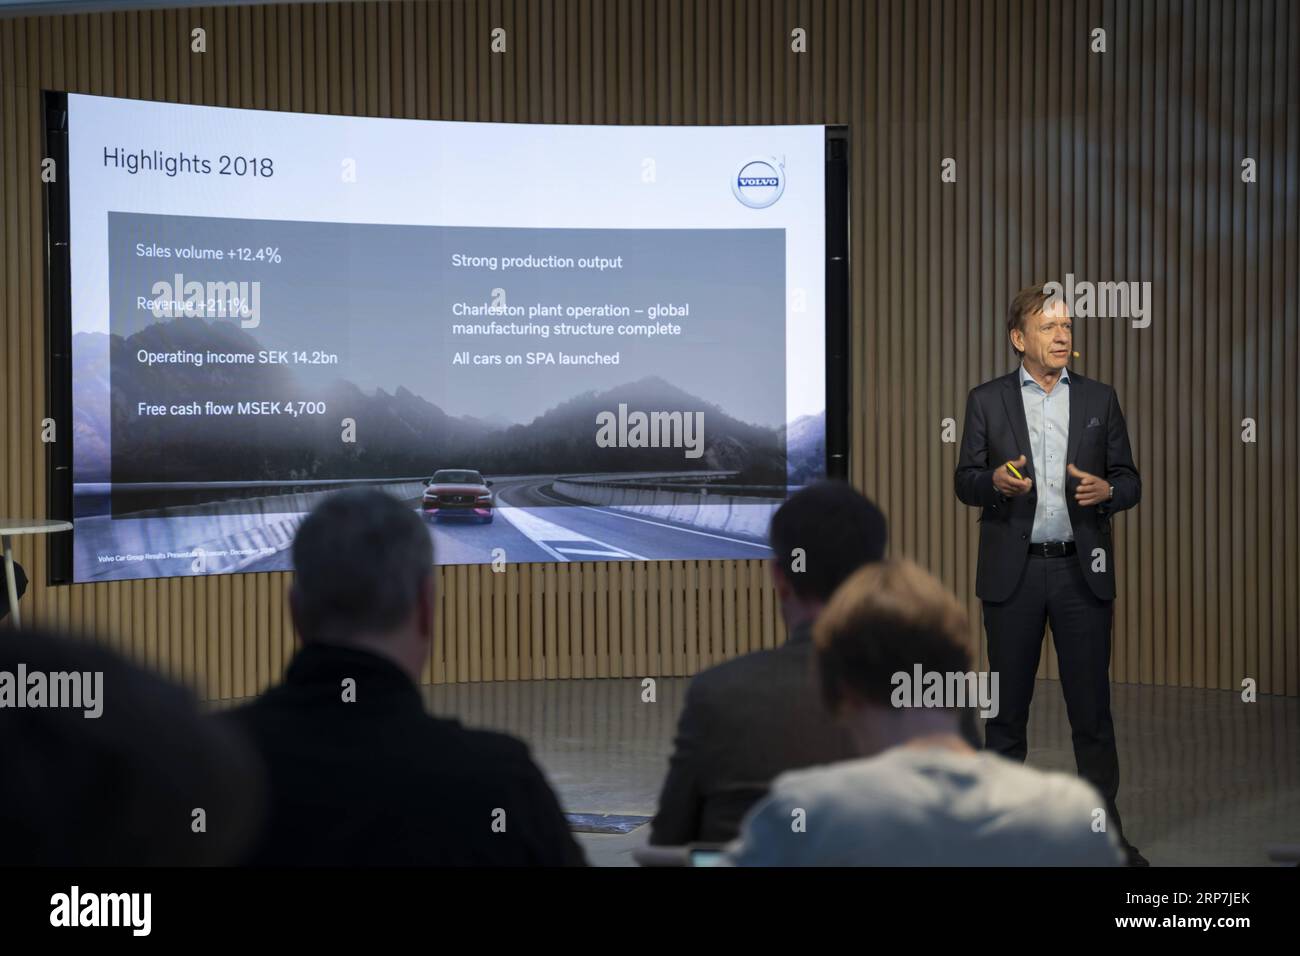 (190207) -- STOCCOLMA, 7 febbraio 2019 -- Hakan Samuelsson, presidente e CEO di Volvo Cars, parla a una conferenza stampa a Stoccolma, in Svezia, 7 febbraio 2019. Volvo Cars ha pubblicato giovedì il suo rapporto annuale del 2018 che ha visto il suo quinto anno consecutivo di vendite record. ) SVEZIA-STOCCOLMA-VOLVO CARS-RELAZIONE ANNUALE WEIXXUECHAO PUBLICATIONXNOTXINXCHN Foto Stock